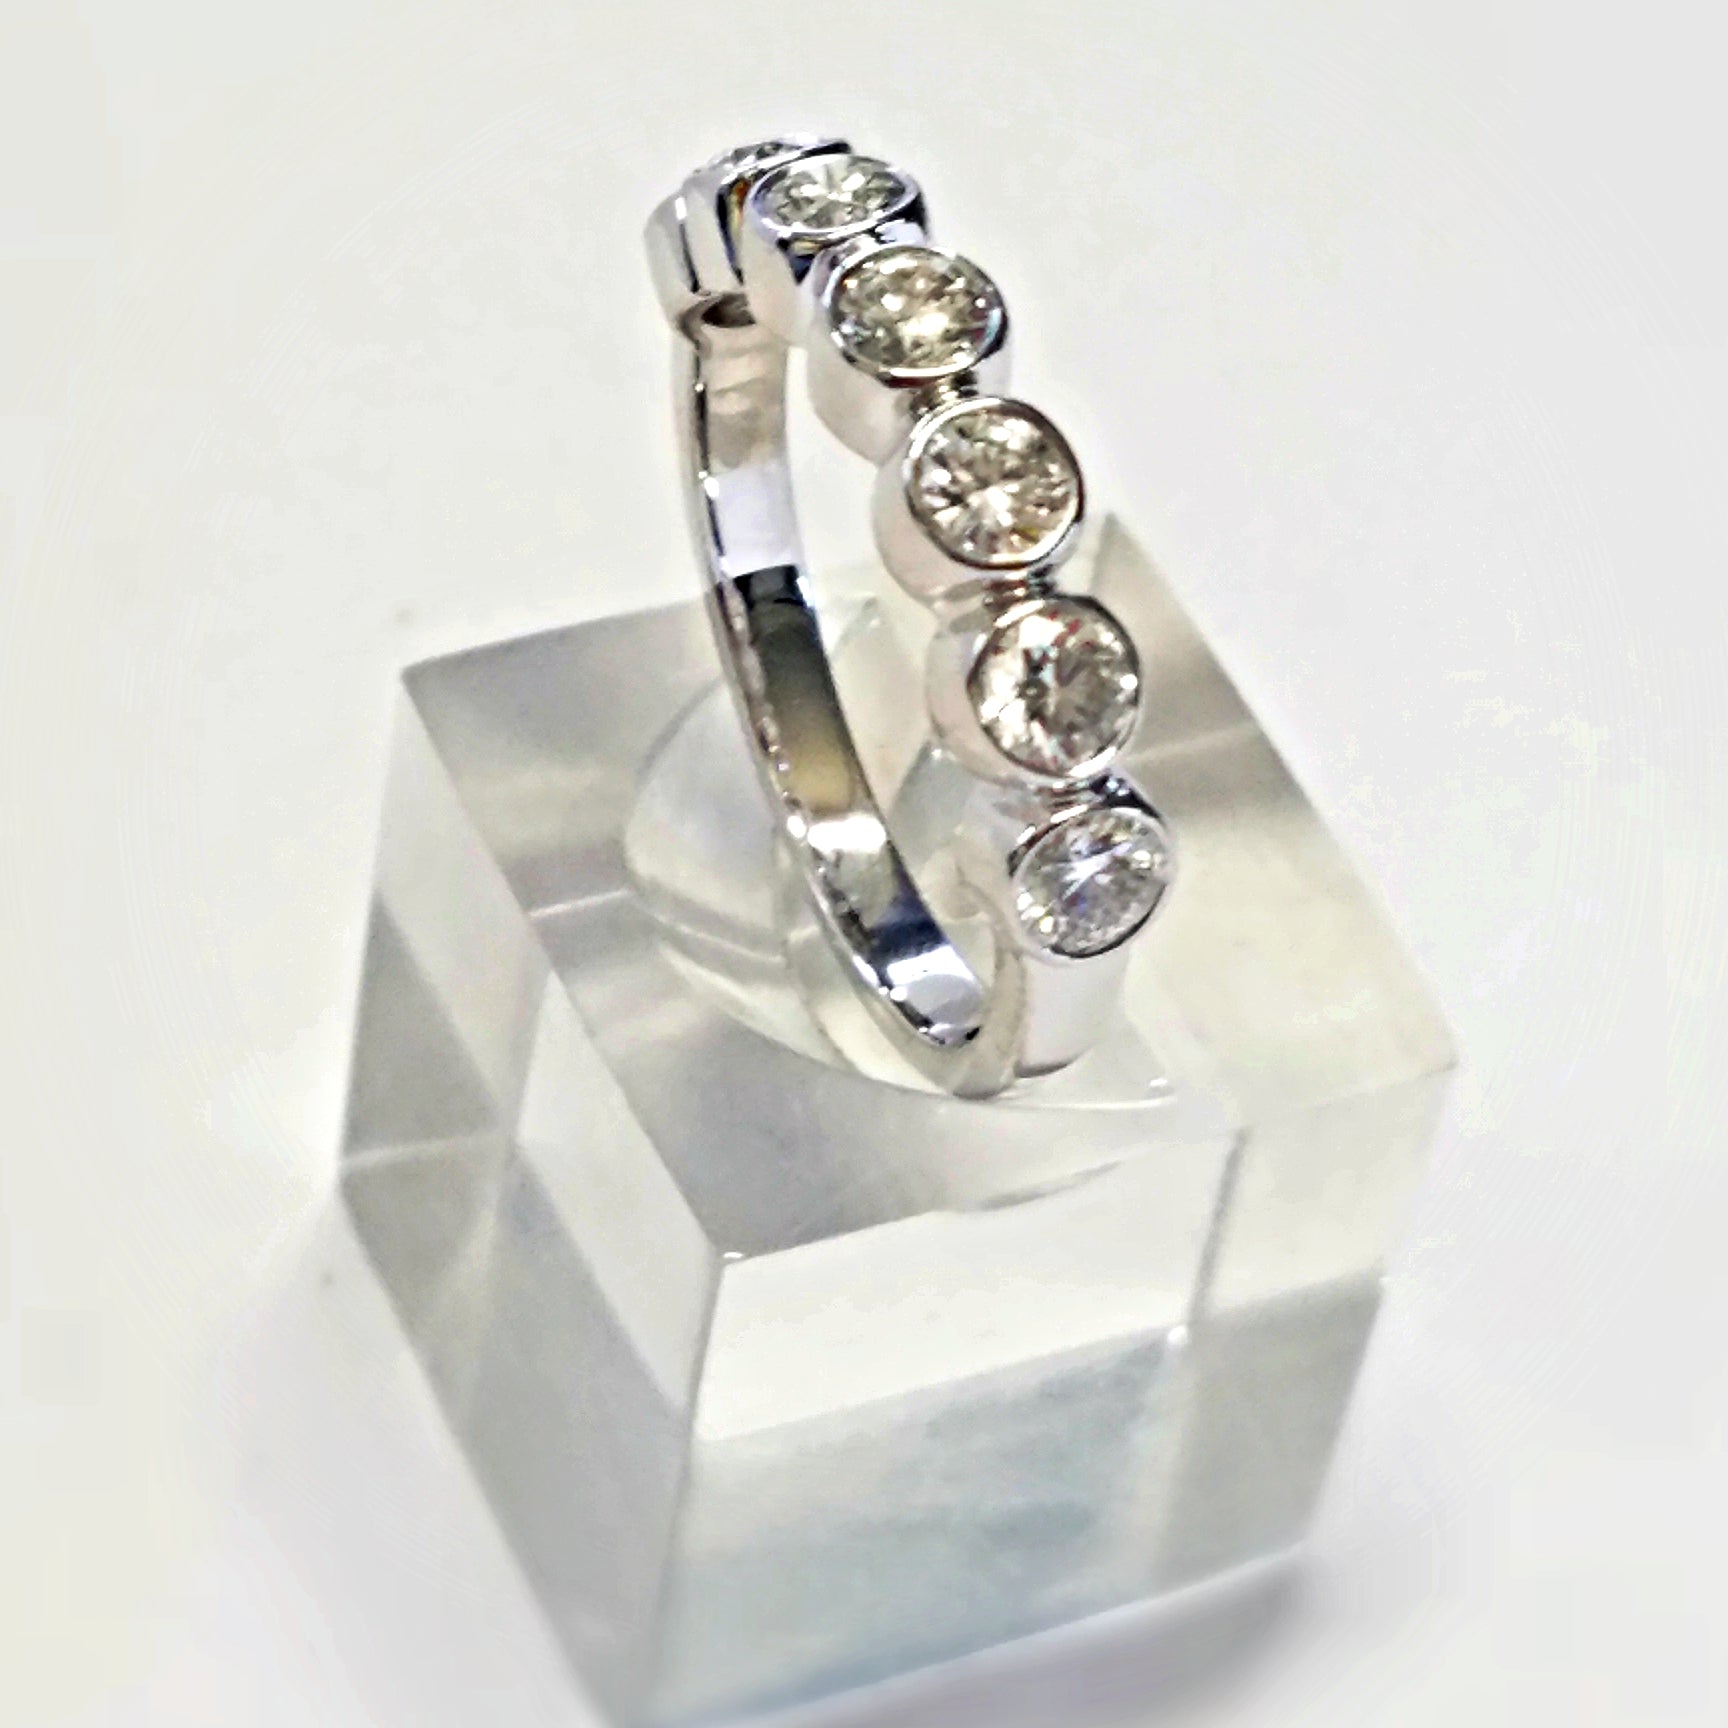 Tiffany & Co. 7 diamond Heart Shaped .950 Plat Ring* sz. 5 1/2 * Retail  $3400.00 | eBay